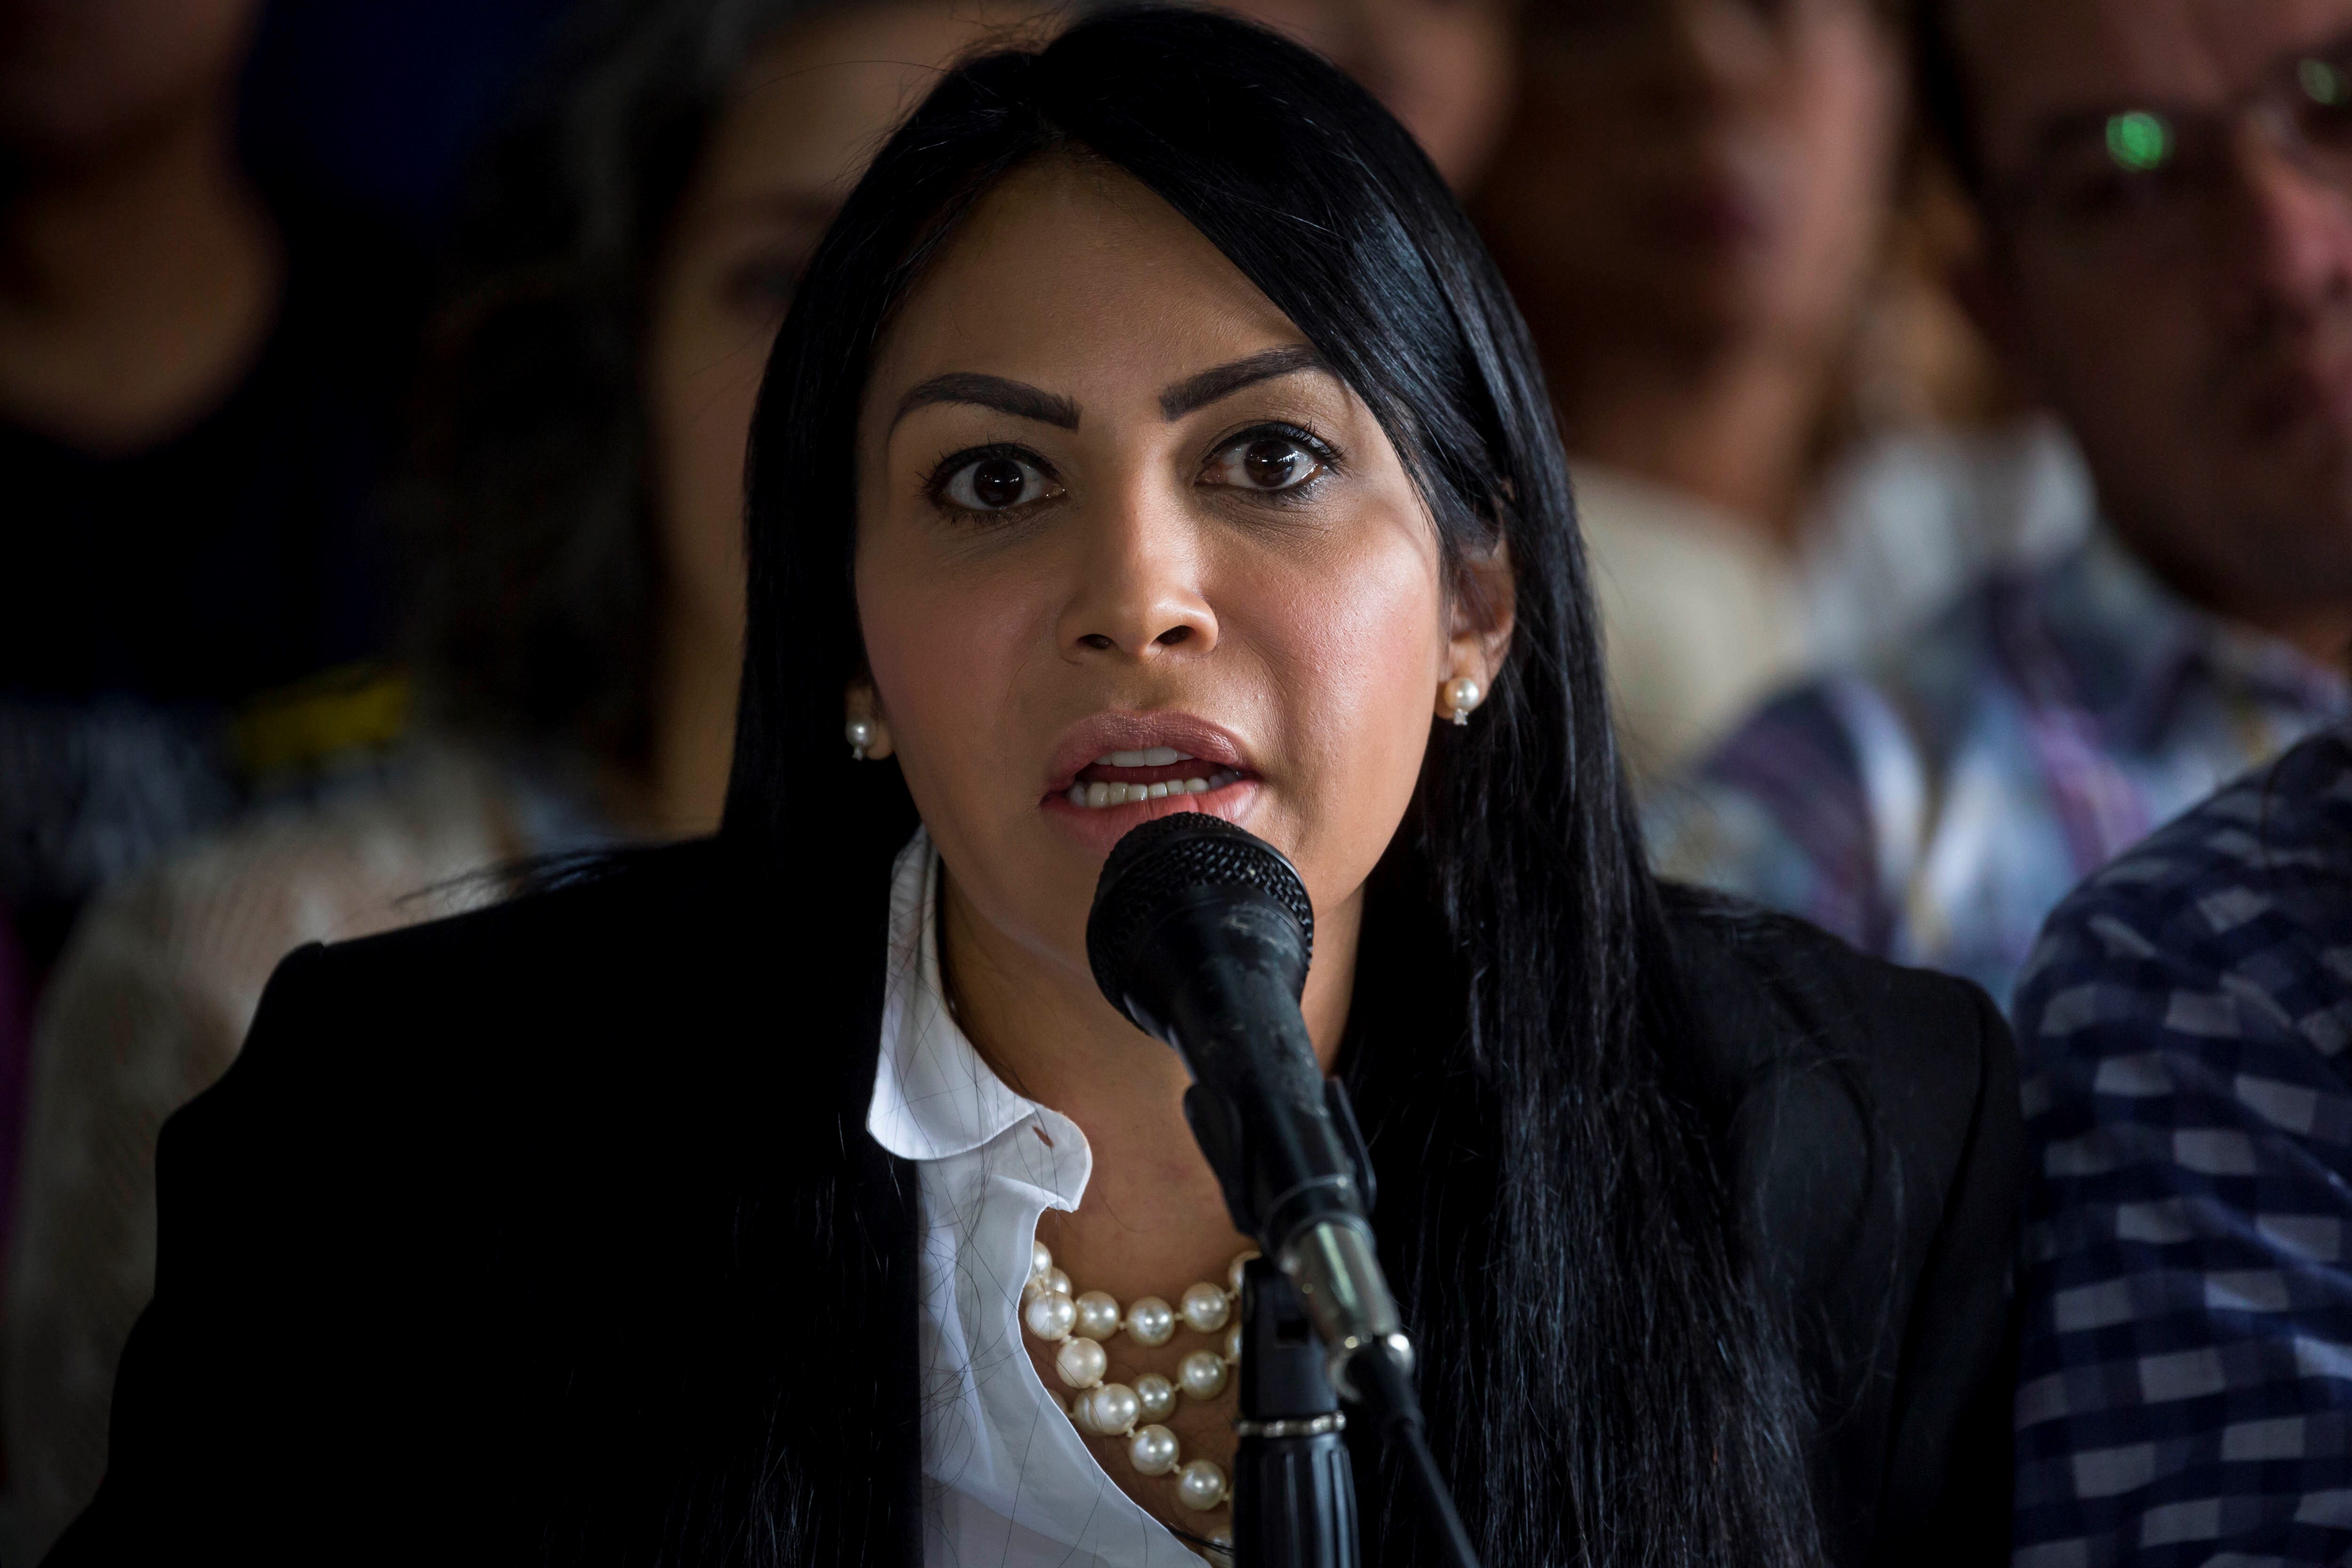 En la imagen, la líder opositora venezolana Delsa Solórzano. EFE/Miguel Gutiérrez/Archivo
